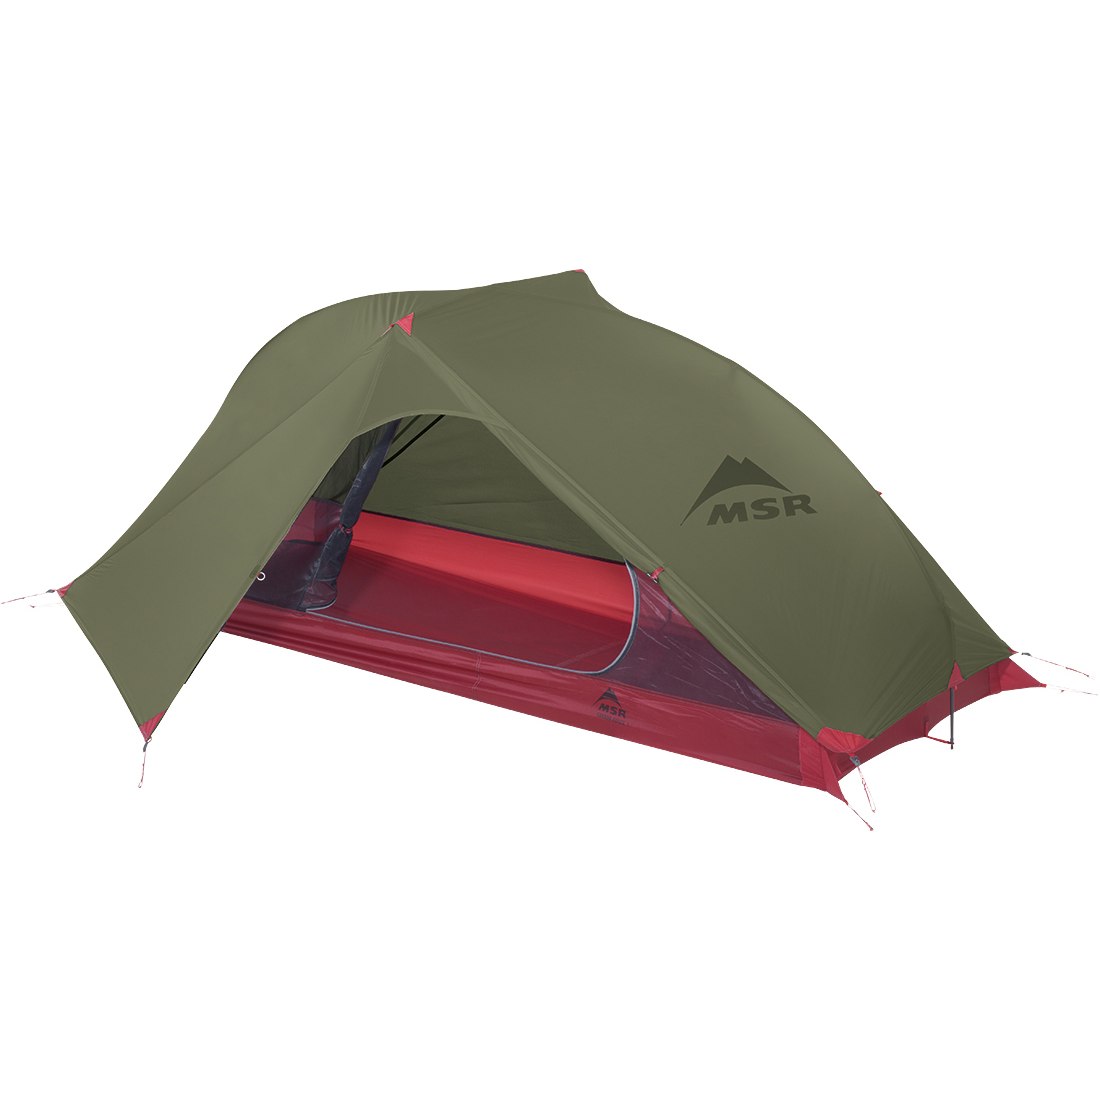 Productfoto van MSR Carbon Reflex 1 V4 - Tent - Groen